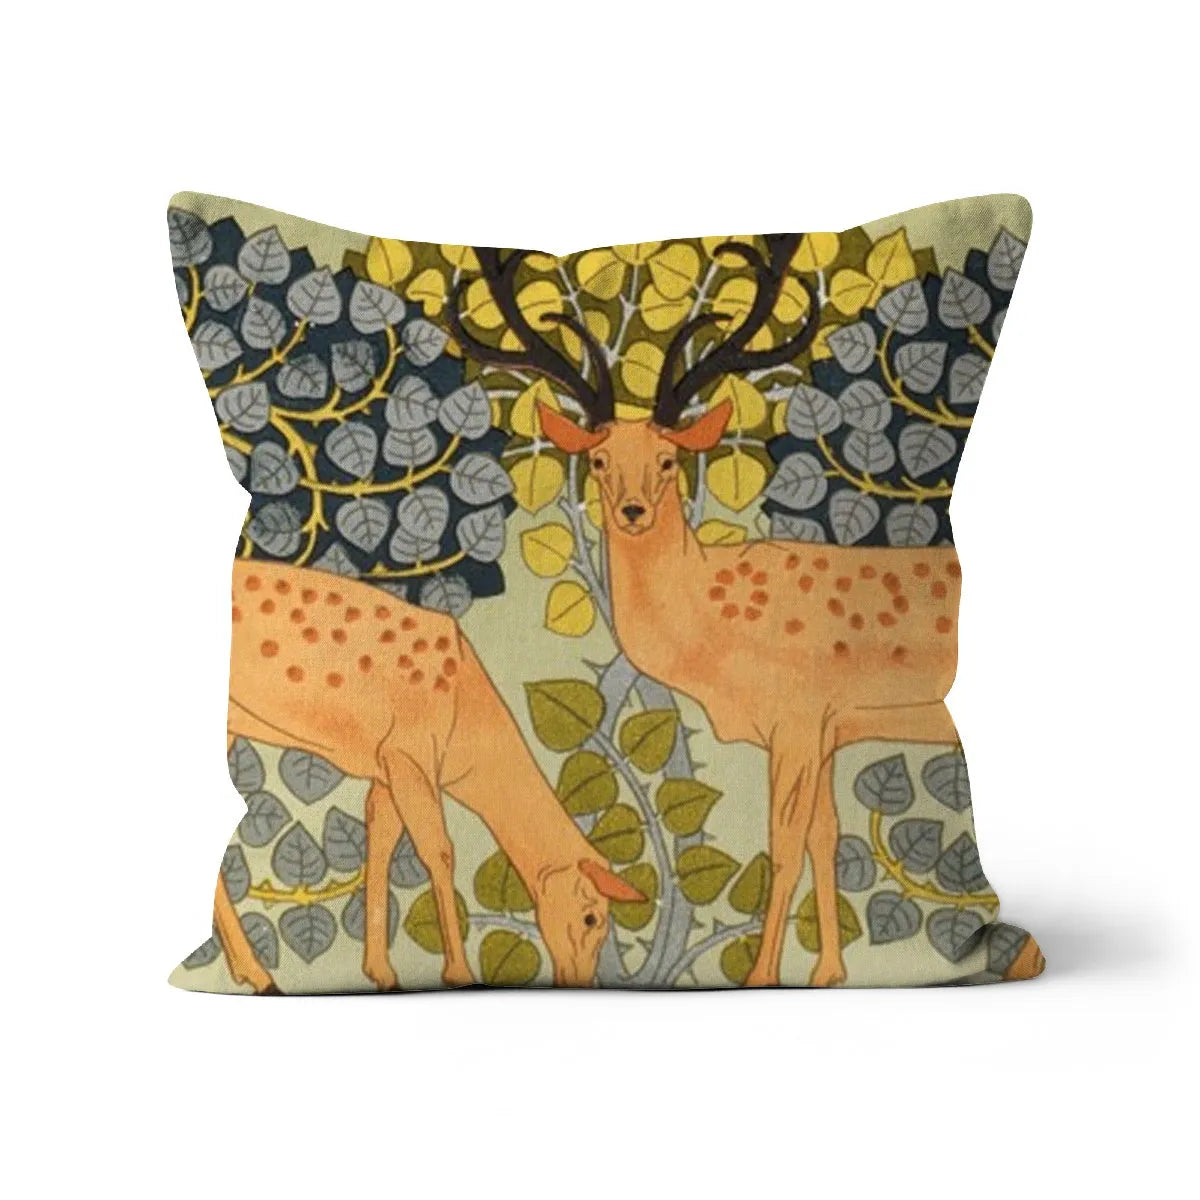 Sagittaire - Maurice Pillard Verneuil Cushion - Decorative Throw Pillow - Linen / 18’x18’ - Throw Pillows